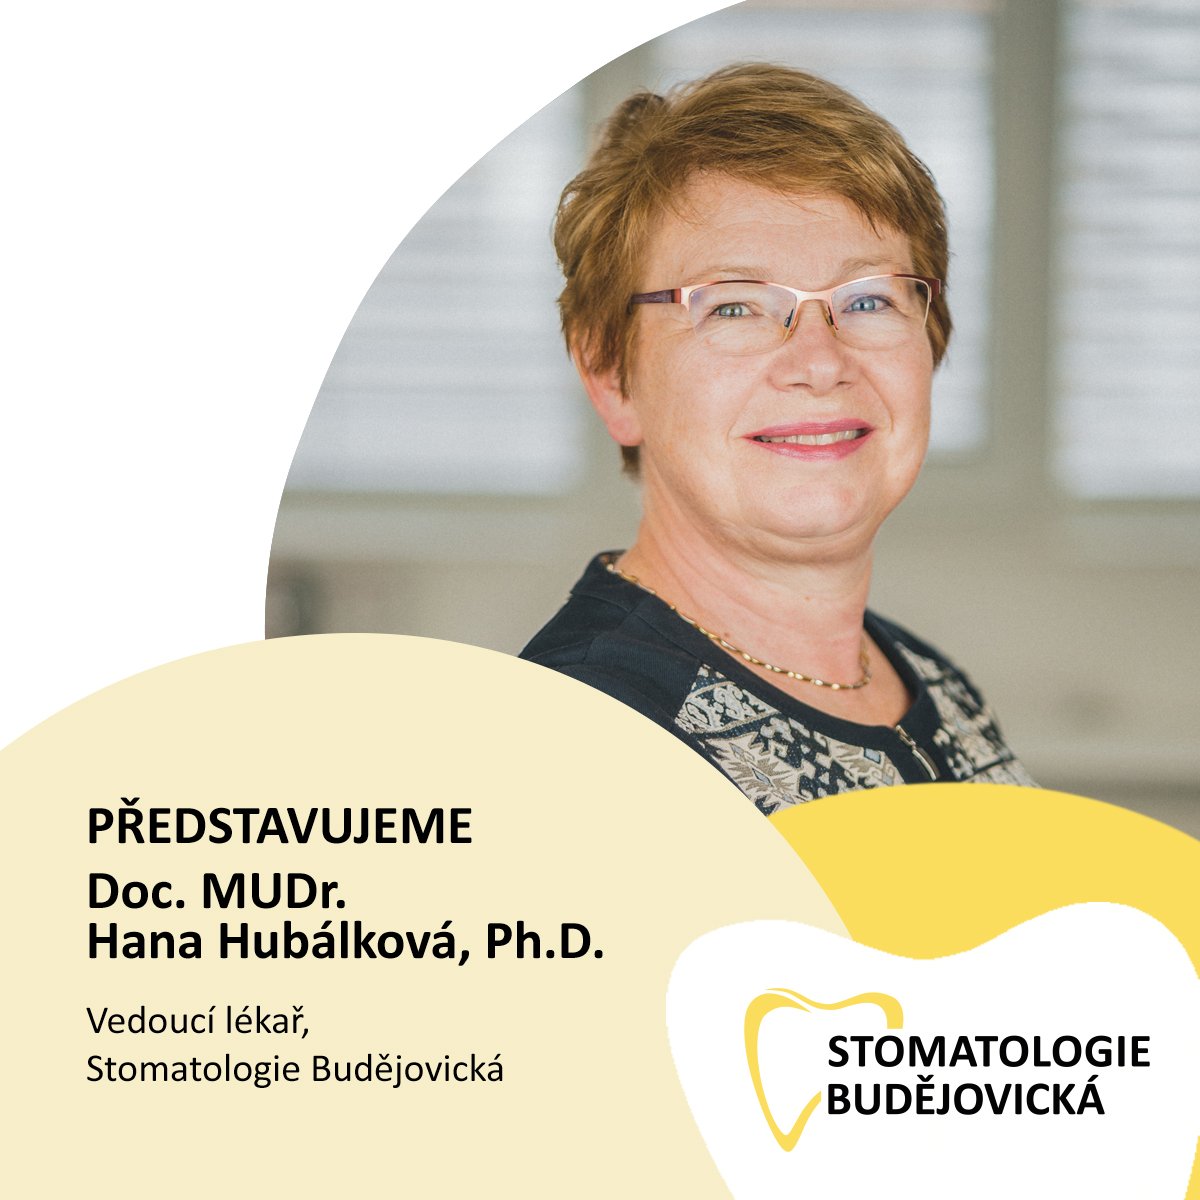 PŘEDSTAVUJEME: doc. MUDr. Hana Hubálková, Ph.D.